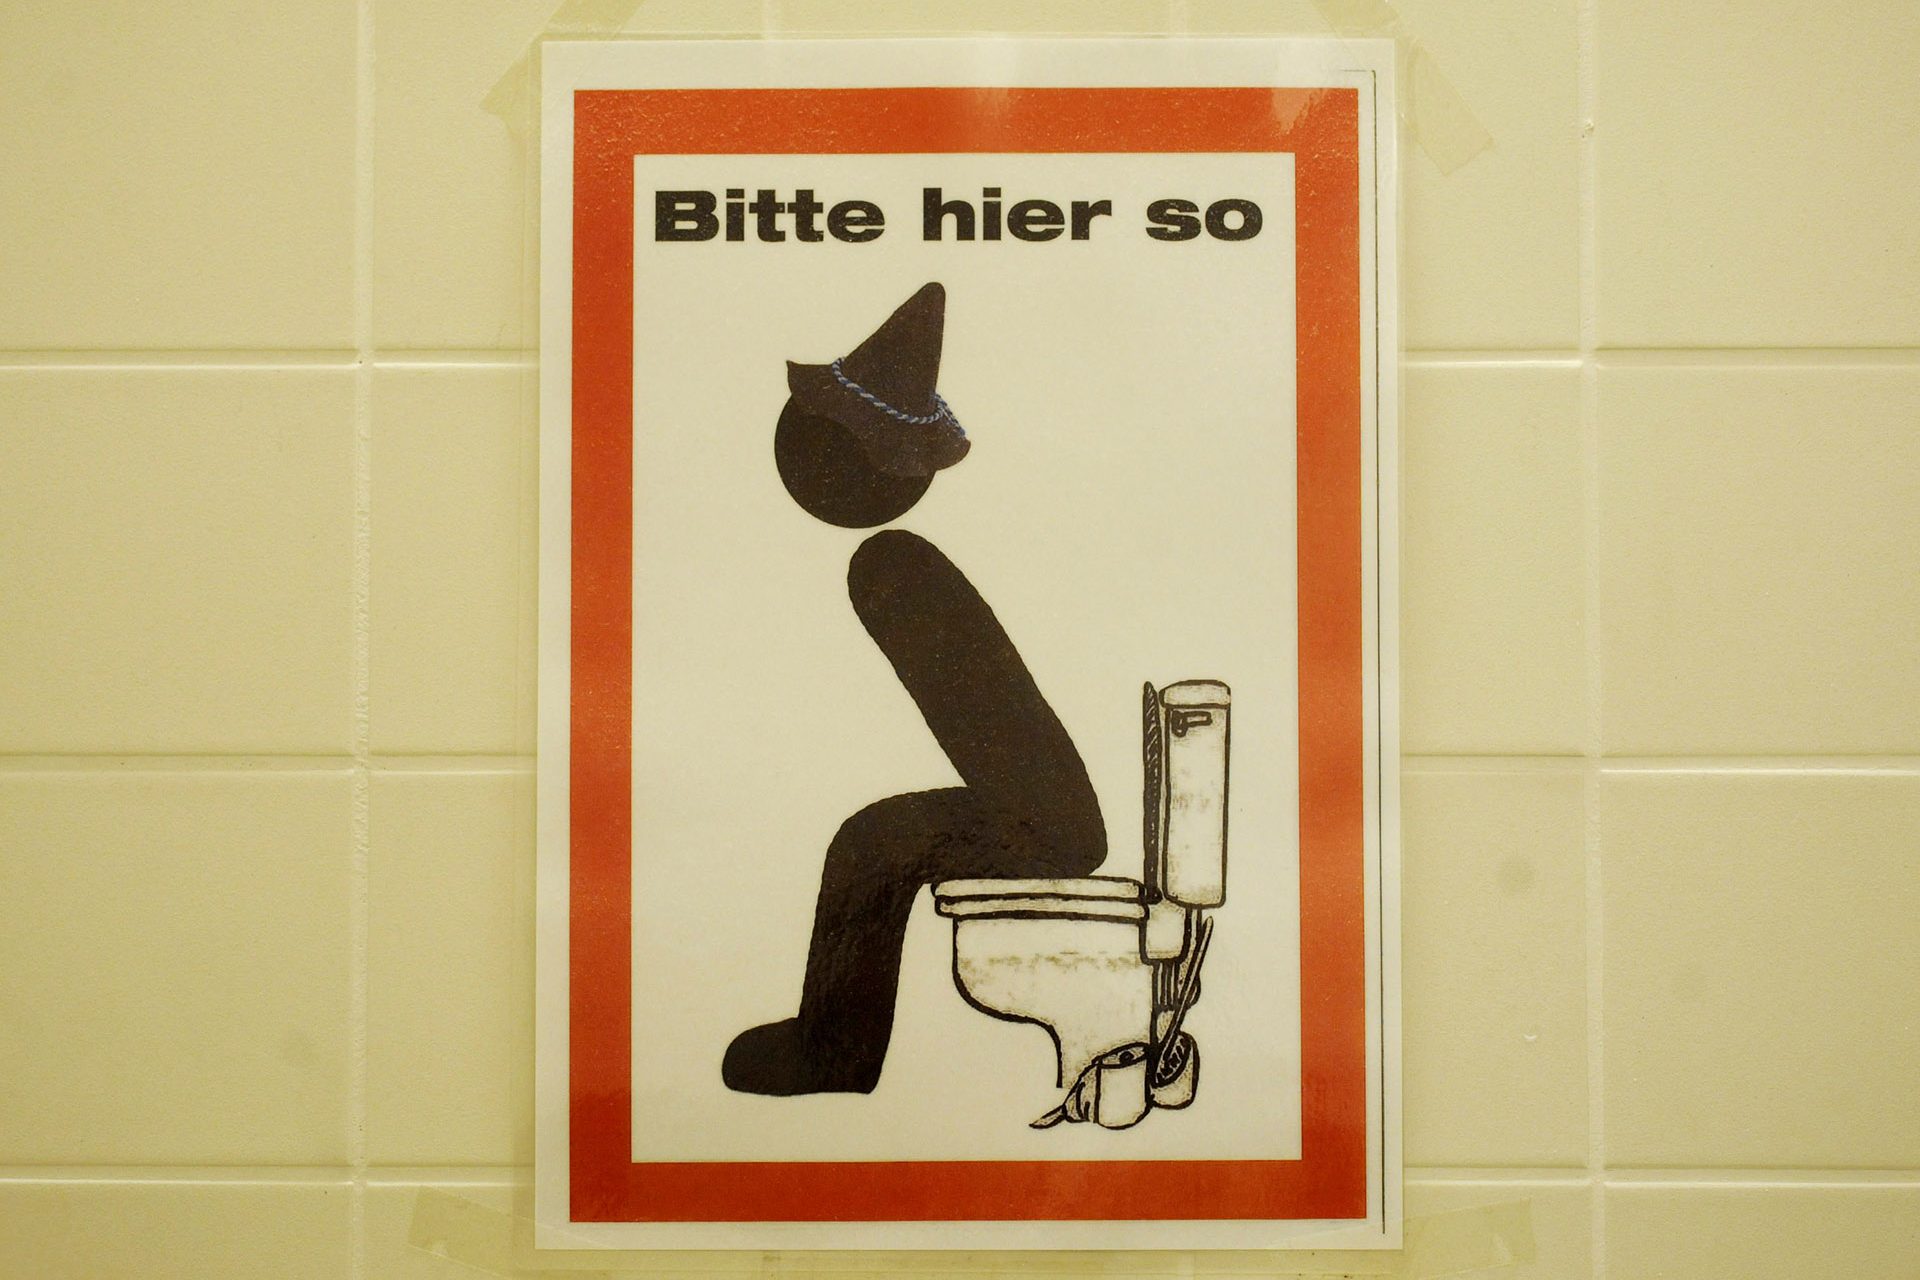 Banheiros públicos pedem usuários sentados